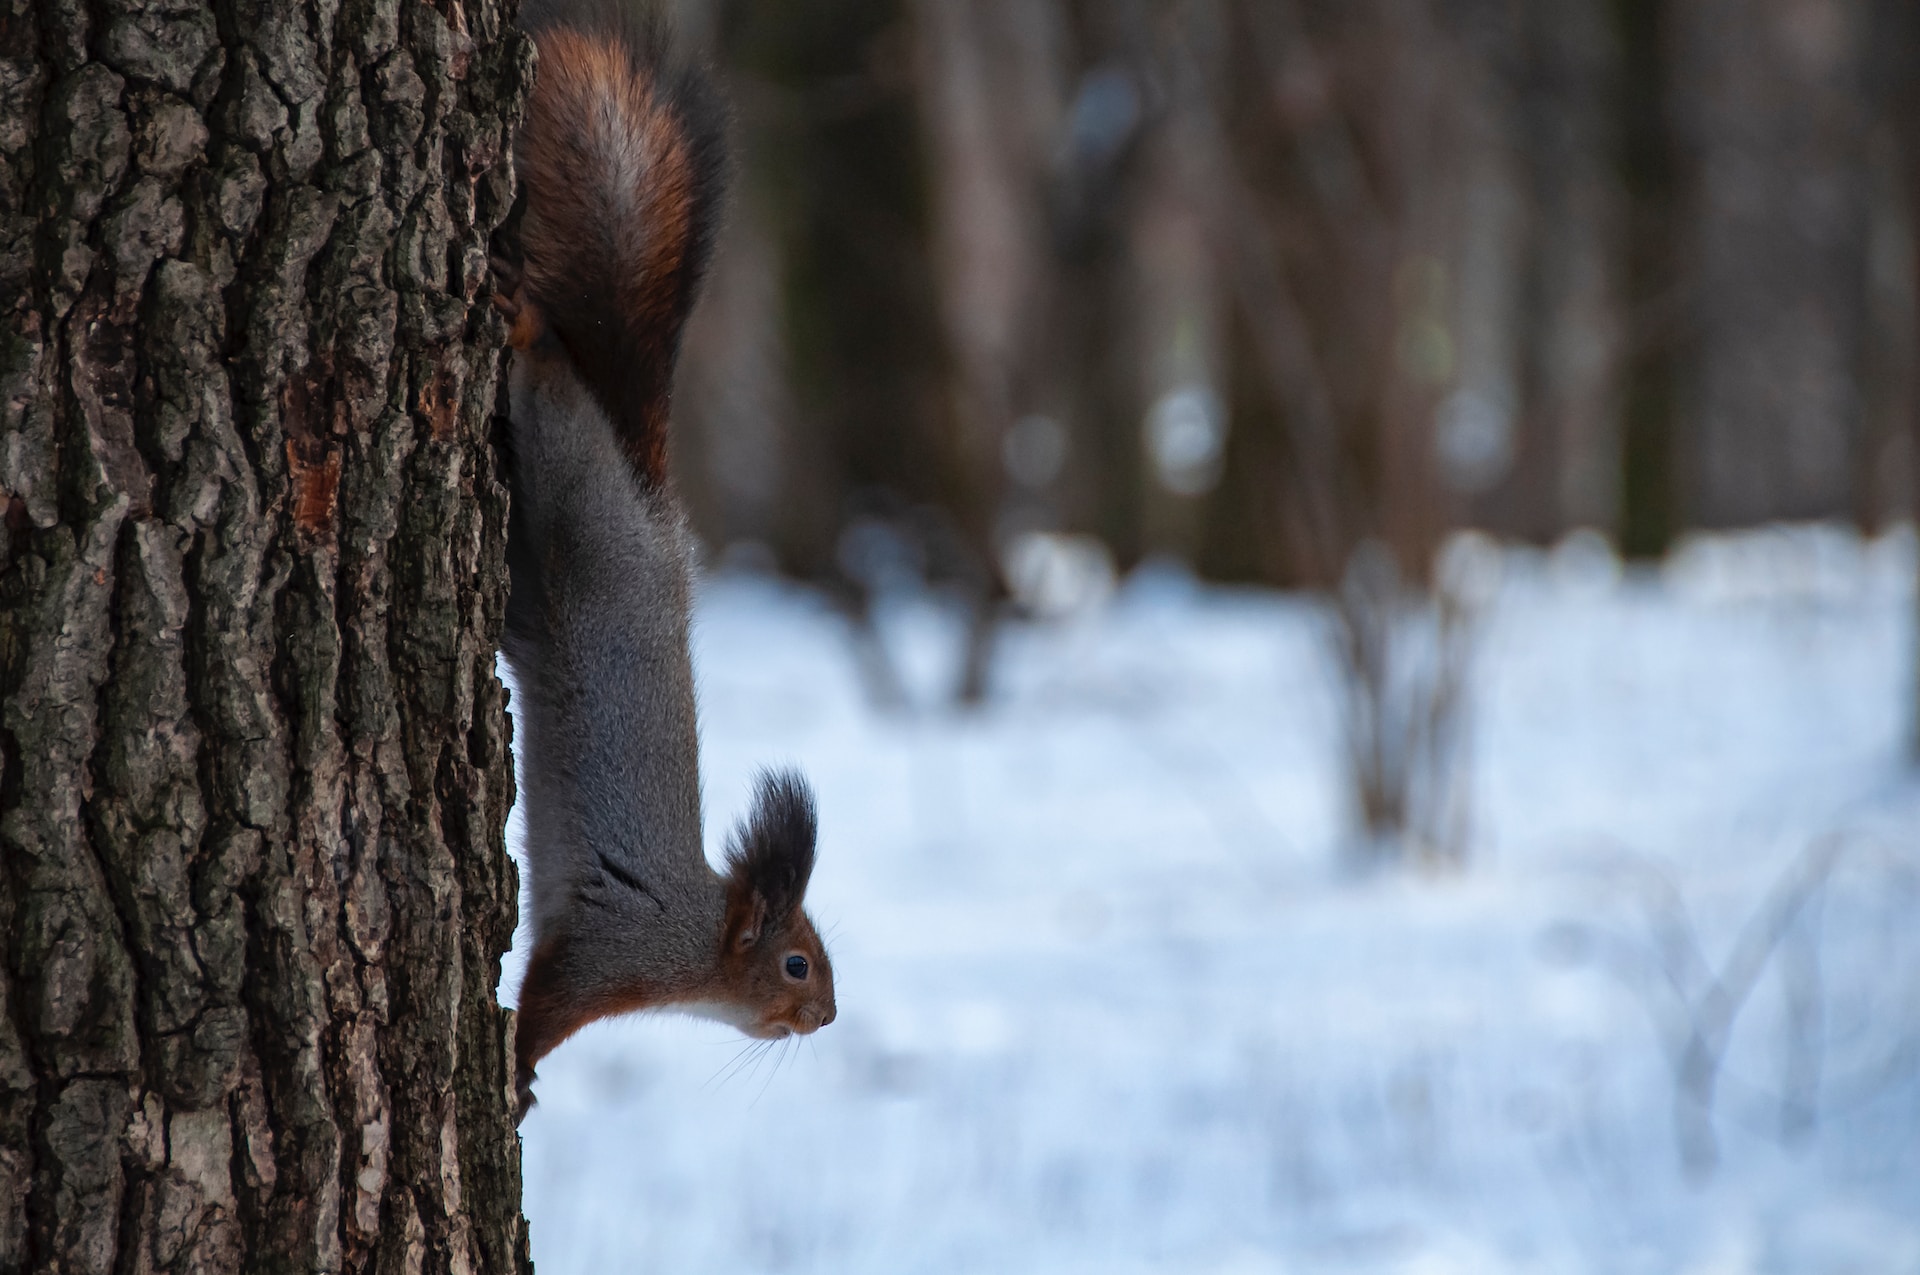 Machen Eichhörnchen winterschlaf?